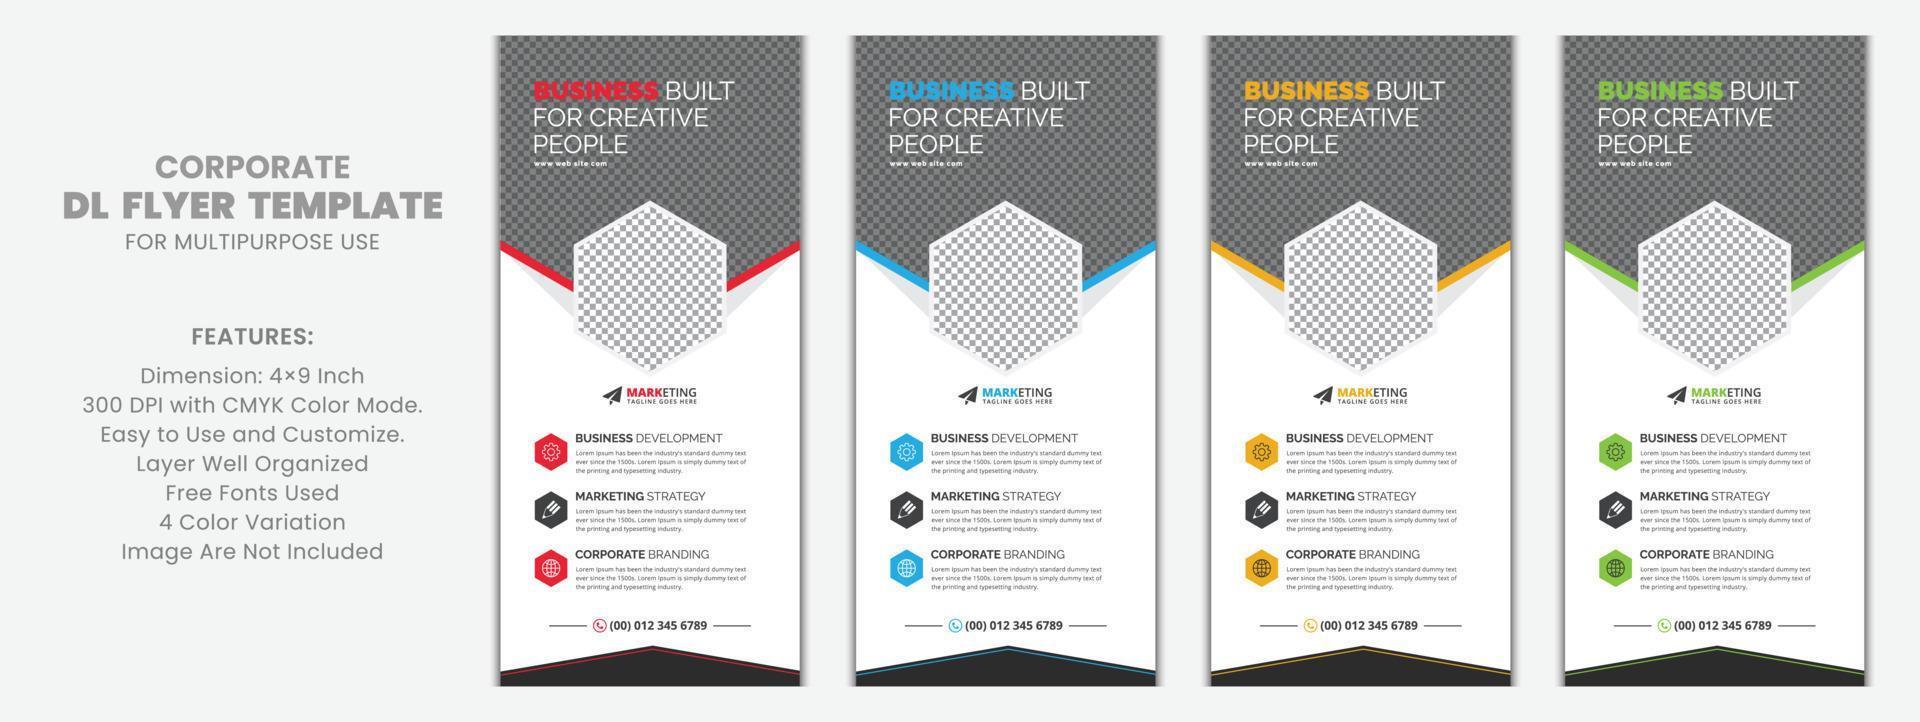 conception de vecteur de modèle de carte de support de flyer d'entreprise dl pour les affaires, le marketing, la publicité, l'utilisation polyvalente avec des variations de couleur rouge, bleu, jaune et vert